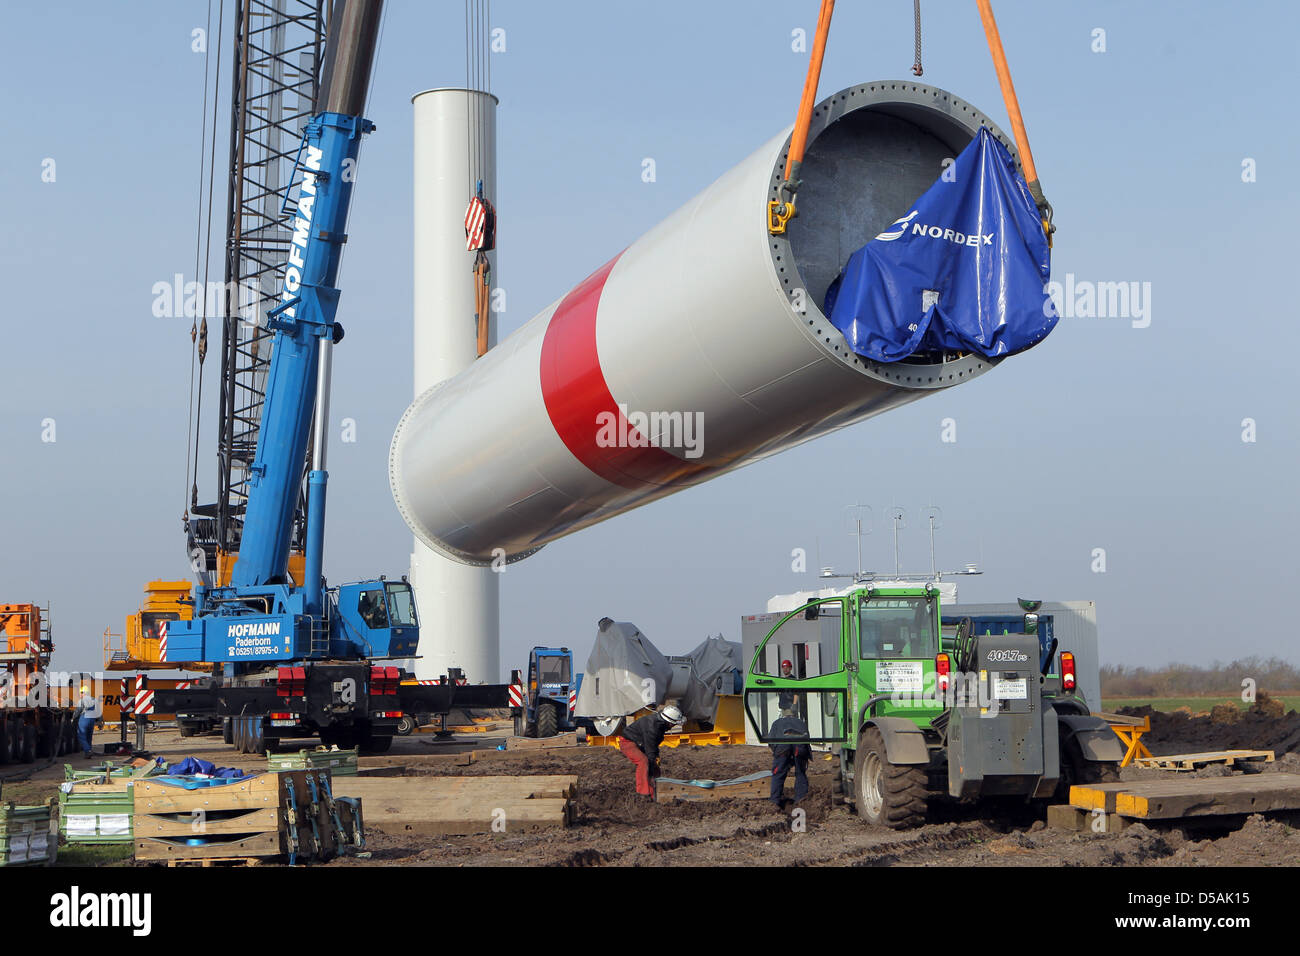 Geben, Deutschland, installiert mit Hilfe von zwei Kränen, ein Wind-Turbine-Unternehmen Nordex (Nordex Modell 100) Stockfoto